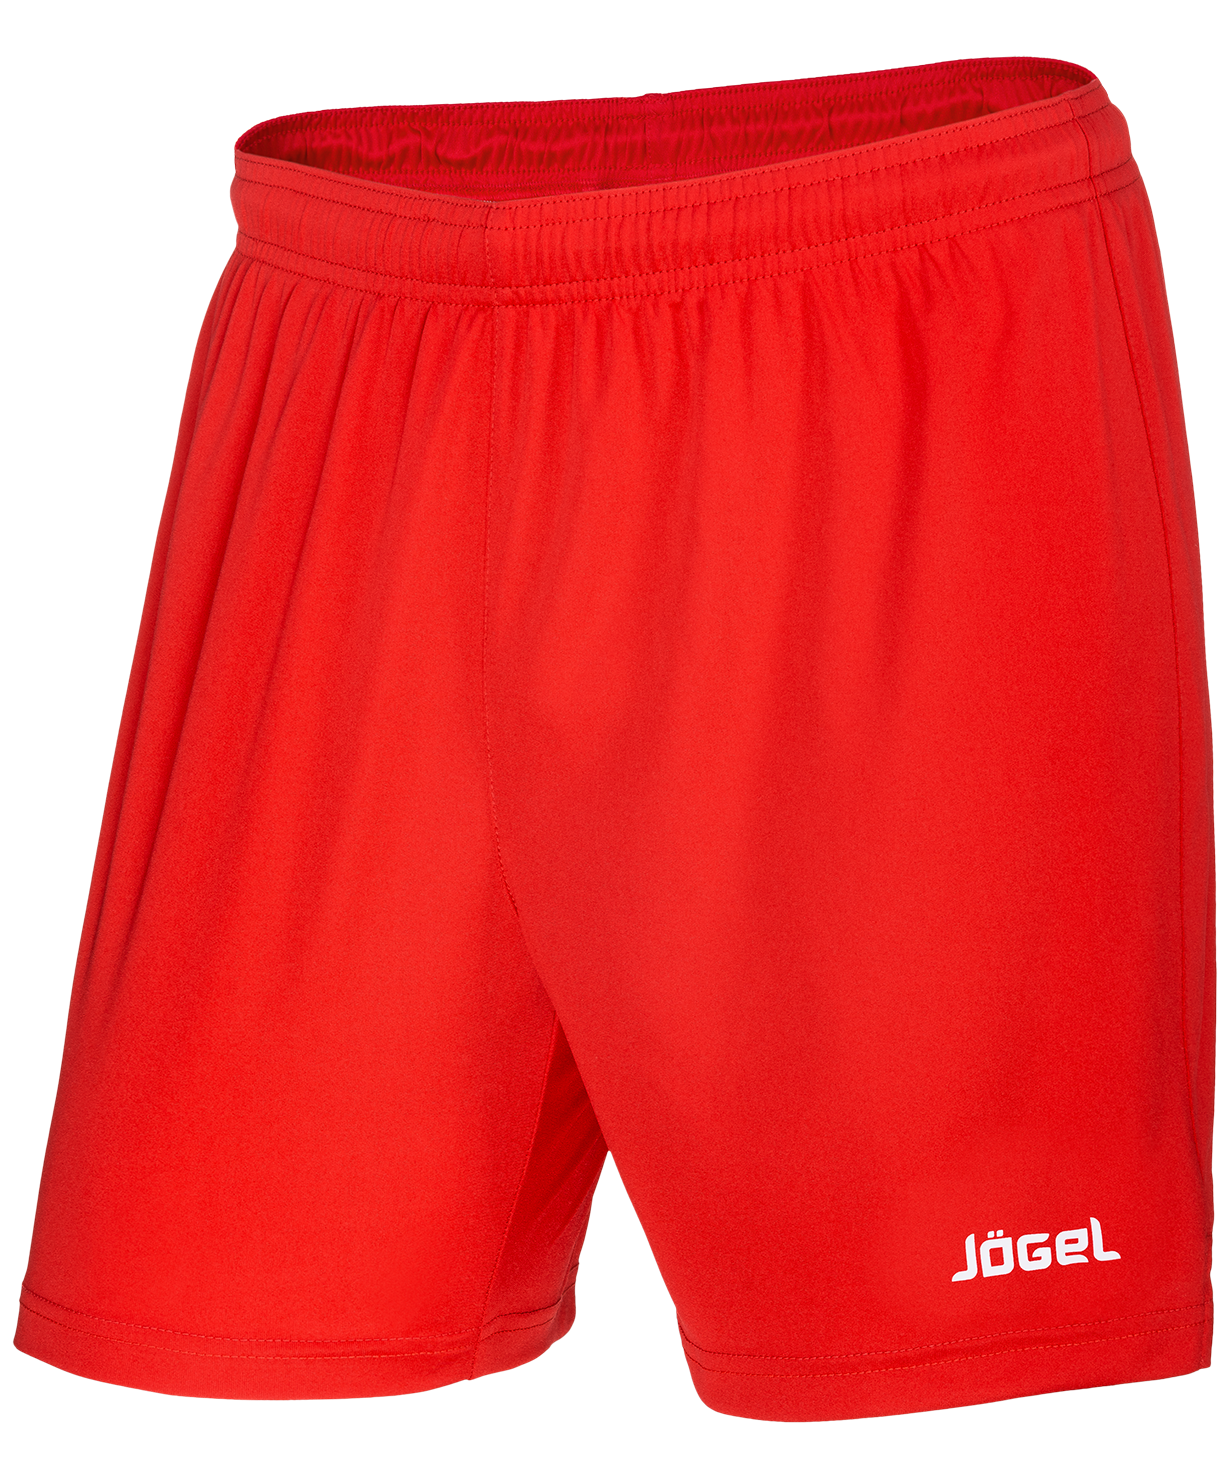 фото Jögel шорты волейбольные jvs-1130-021, красный/белый, детские - ym jogel